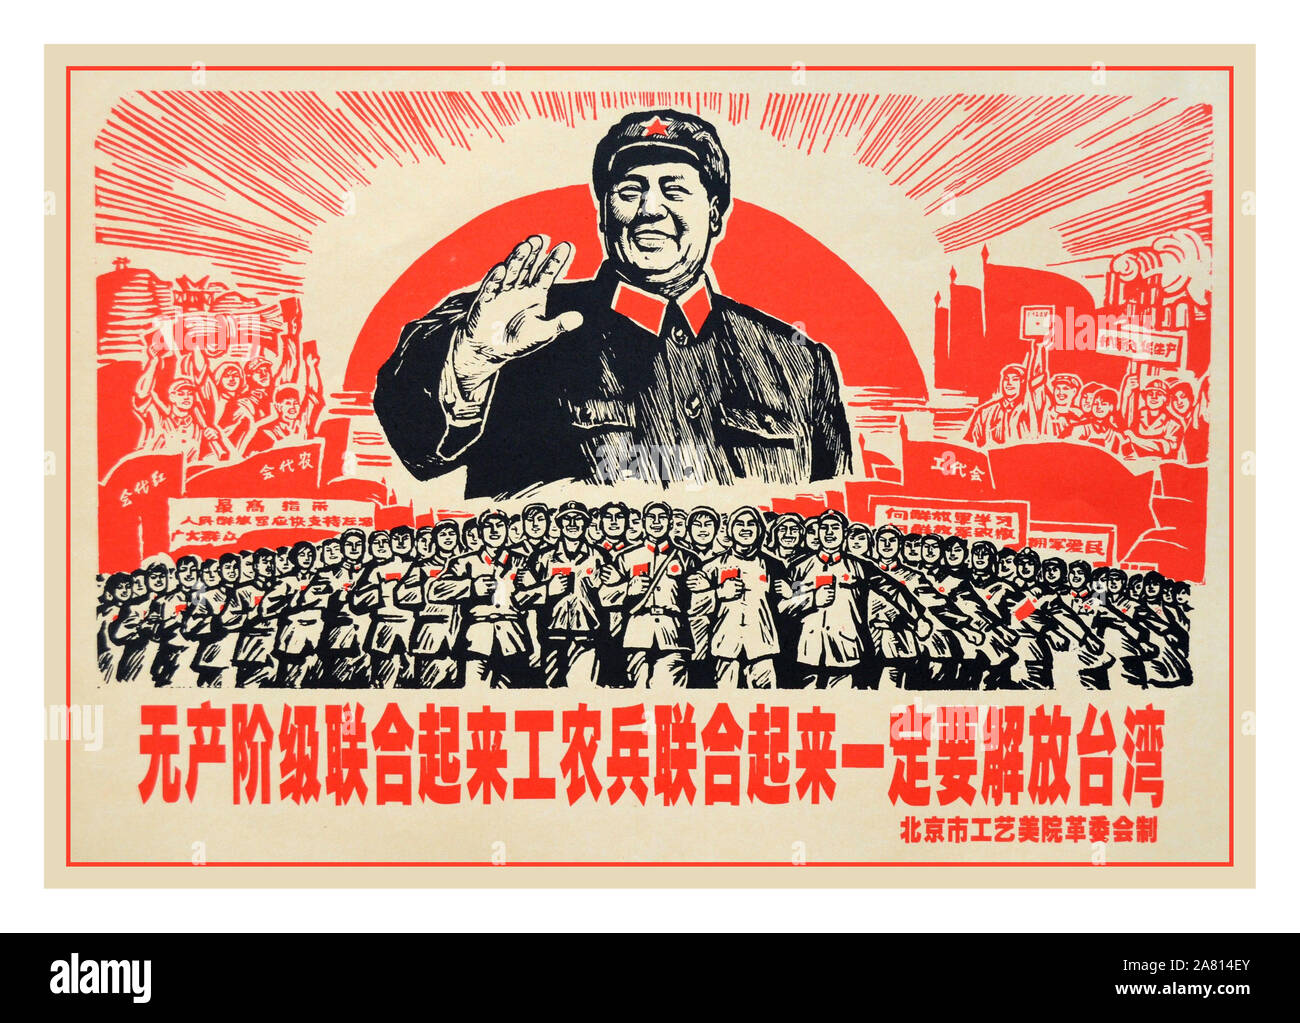 Affiche de propagande du président Mao de Vintage 1950, sous-titrée « LE PROLÉTARIAT S'UNIT, LES TRAVAILLEURS, LES PAYSANS ET LES SOLDATS S'UNISSENT POUR LIBÉRER TAIWAN » République populaire de Chine (RPC), Révolution culturelle Chine Histoire de la culture Affiches d'époque Affiches de propagande communiste illustrations Banque D'Images